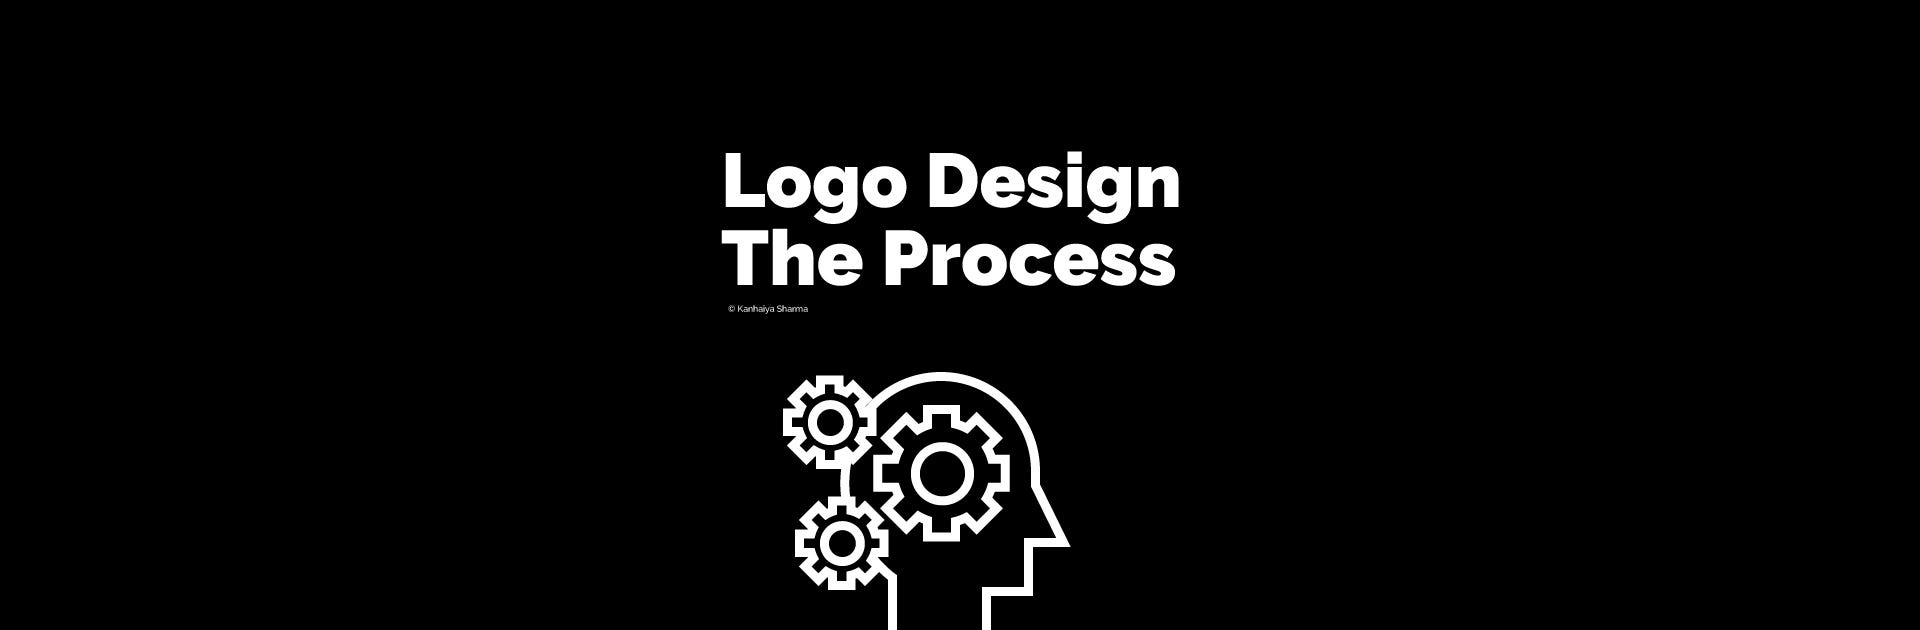 logo design process steps